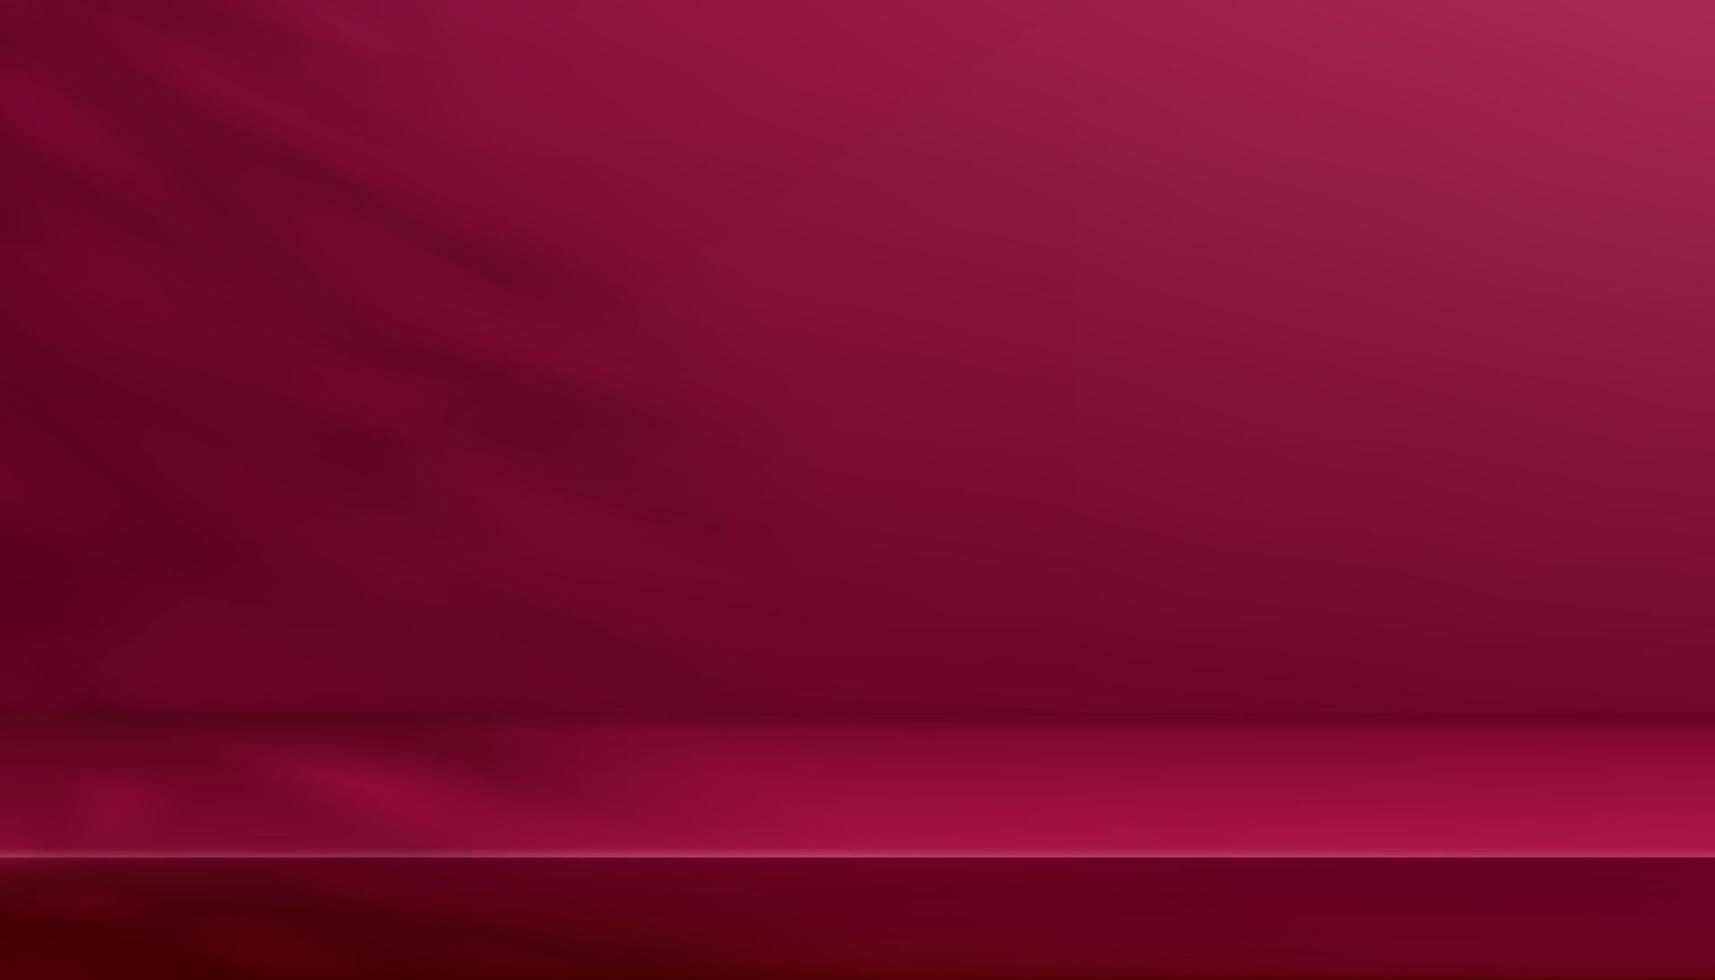 fondo de pared, pantalla de estudio 3d magenta rosa, sombra de hojas naturales reflejada en la pared vacía, presentación de fondo de maqueta interior para productos de belleza, día de la madre, día de San Valentín, tendencia de color 2023 vector